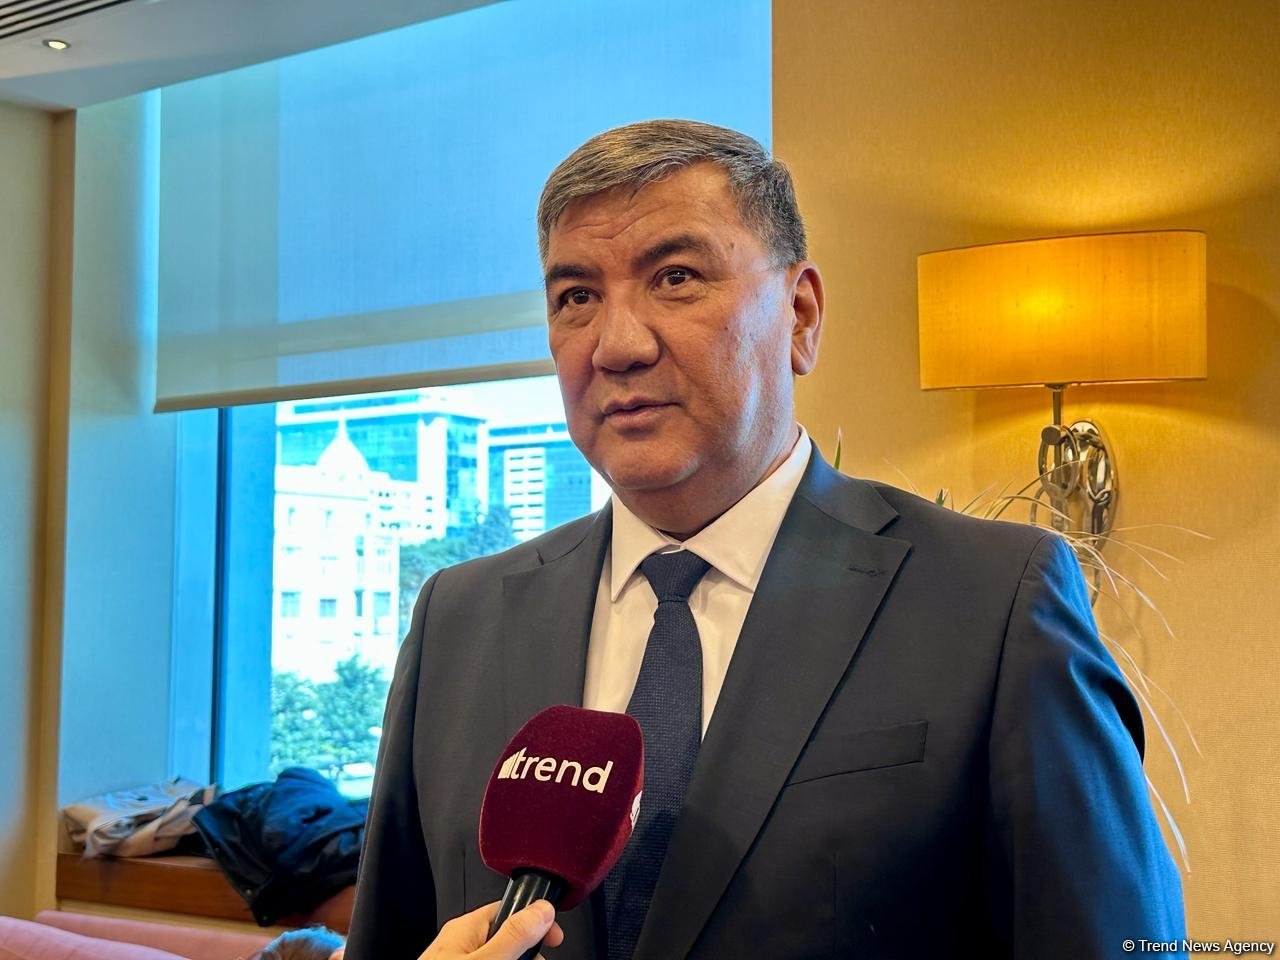 Граждане Азербайджана выстраивались в очереди, чтобы проголосовать на выборах - депутат из Кыргызстана